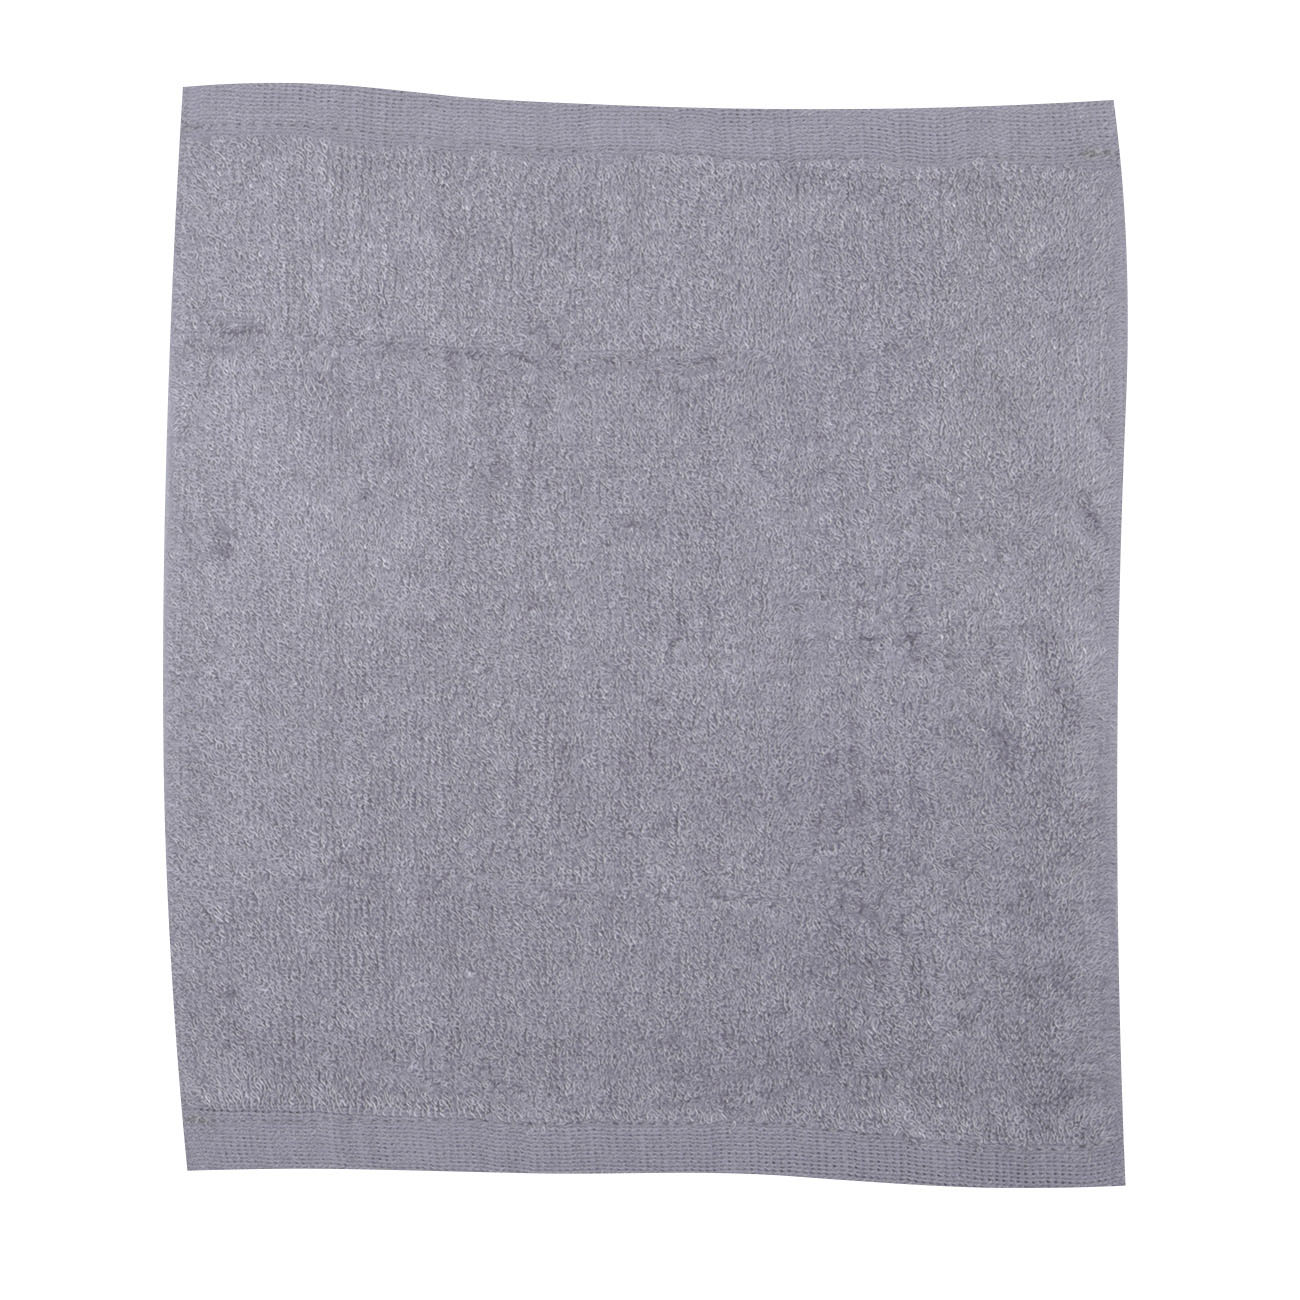 Тряпка-полотенце для кухни, 25х25 см, 3 шт, древесное волокно, серая/бежевая, Clean изображение № 2